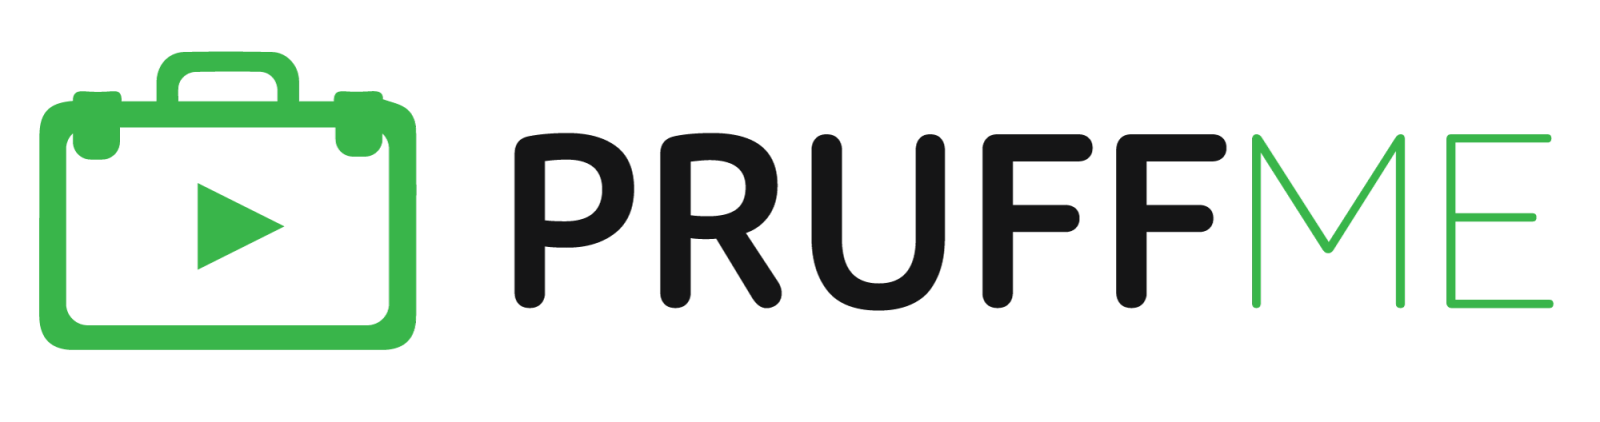 Pruffme logo 